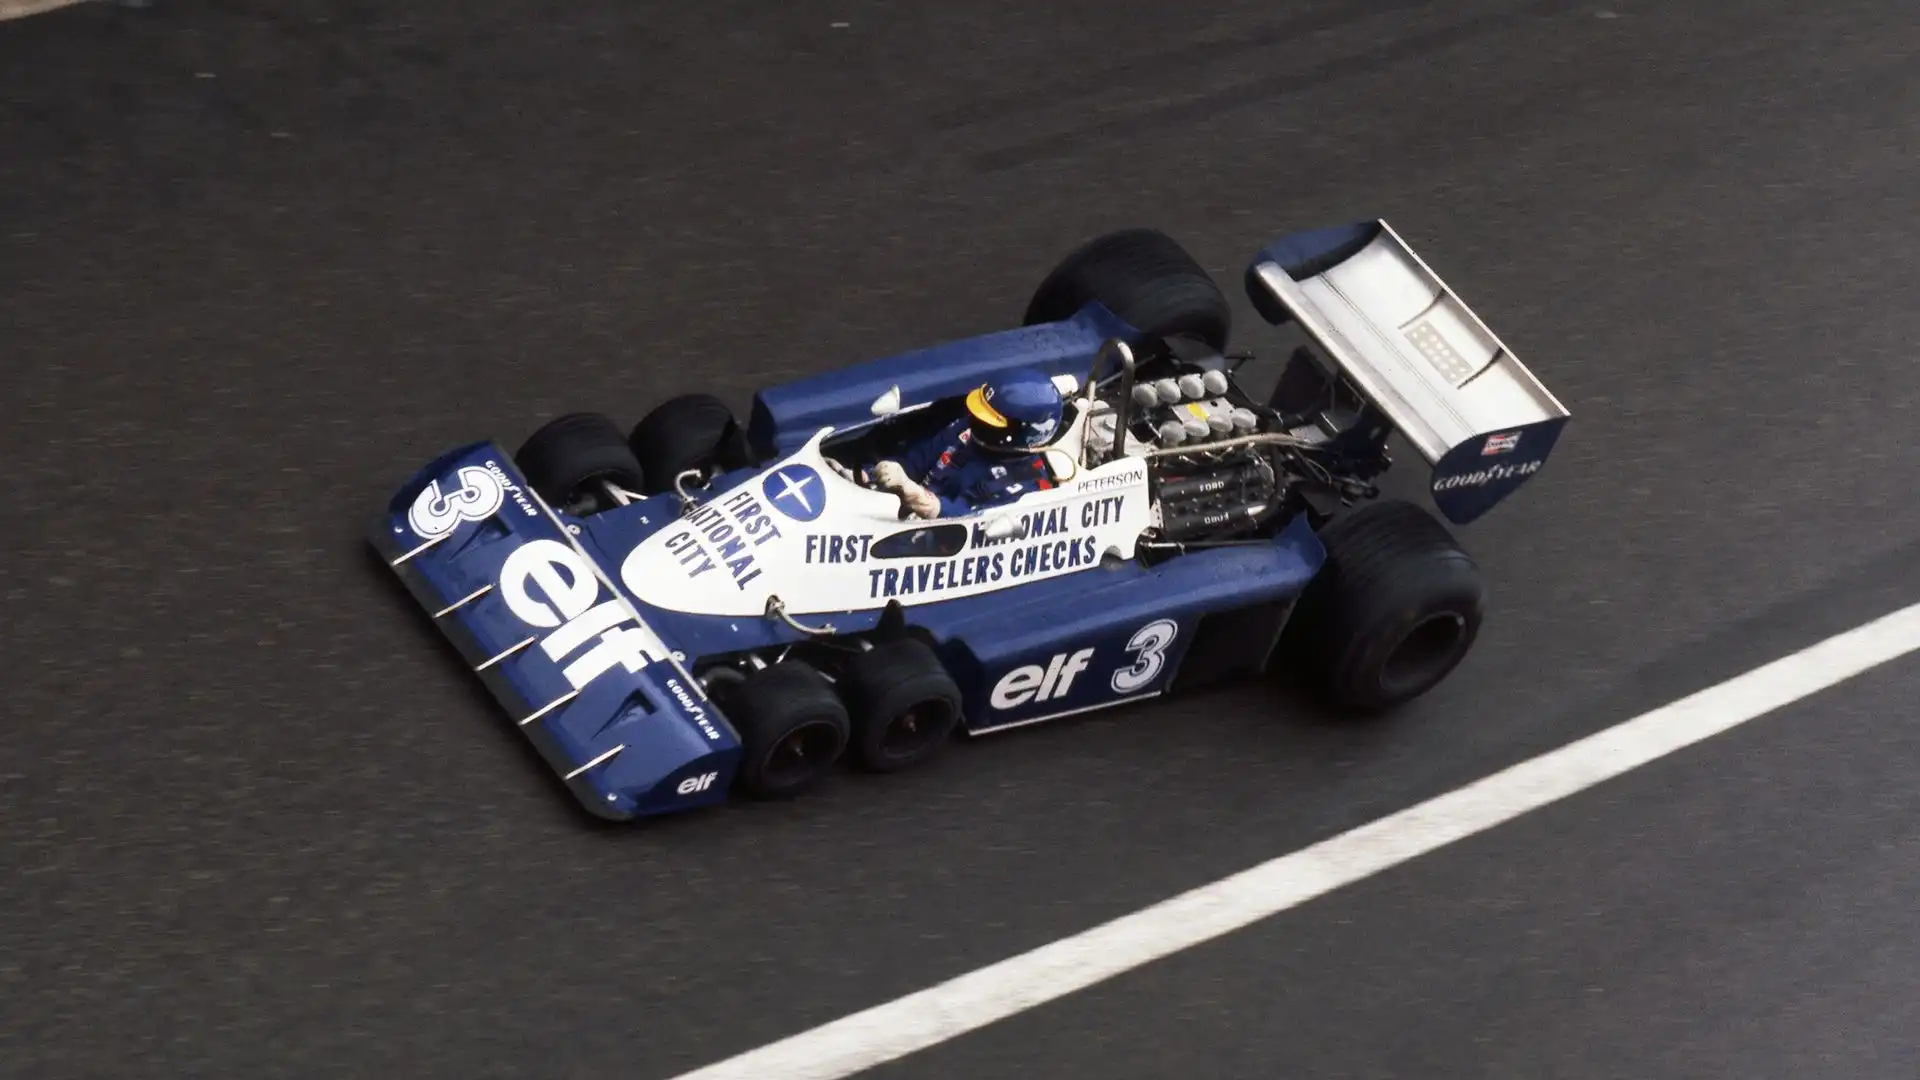 La Tyrrell a 6 ruote iniziò a gareggiare nella seconda metà degli anni '70